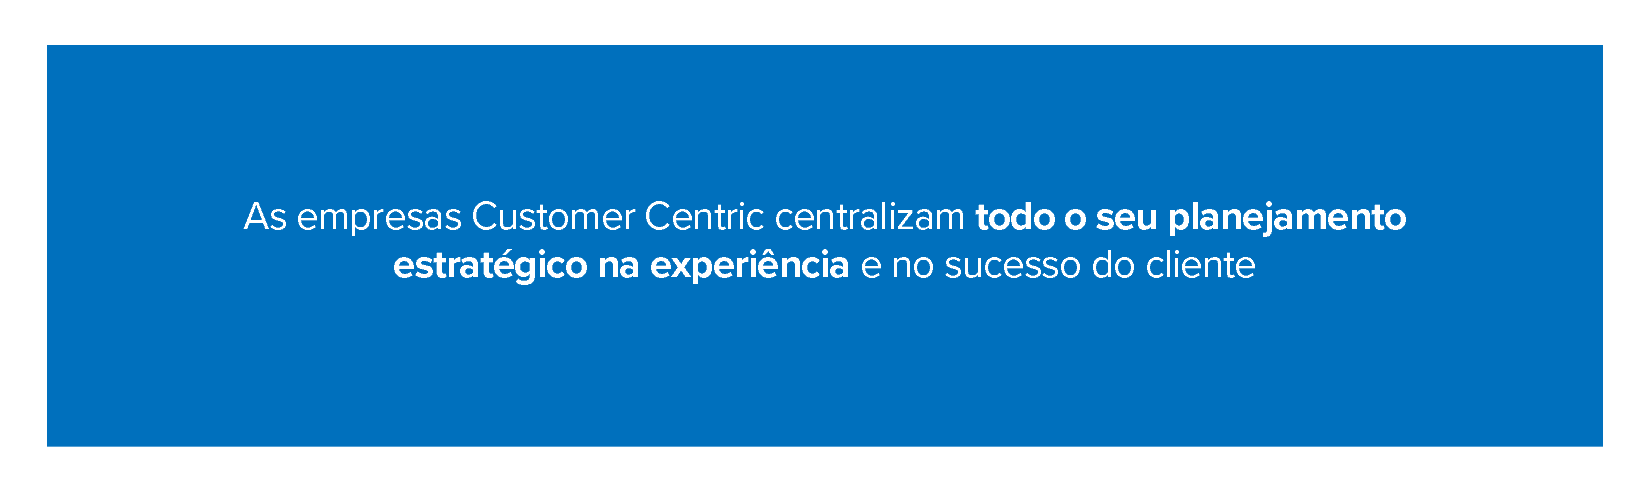 As empresas Customer Centric centralizam todo o seu planejamento estratégico na experiência e no sucesso do cliente 